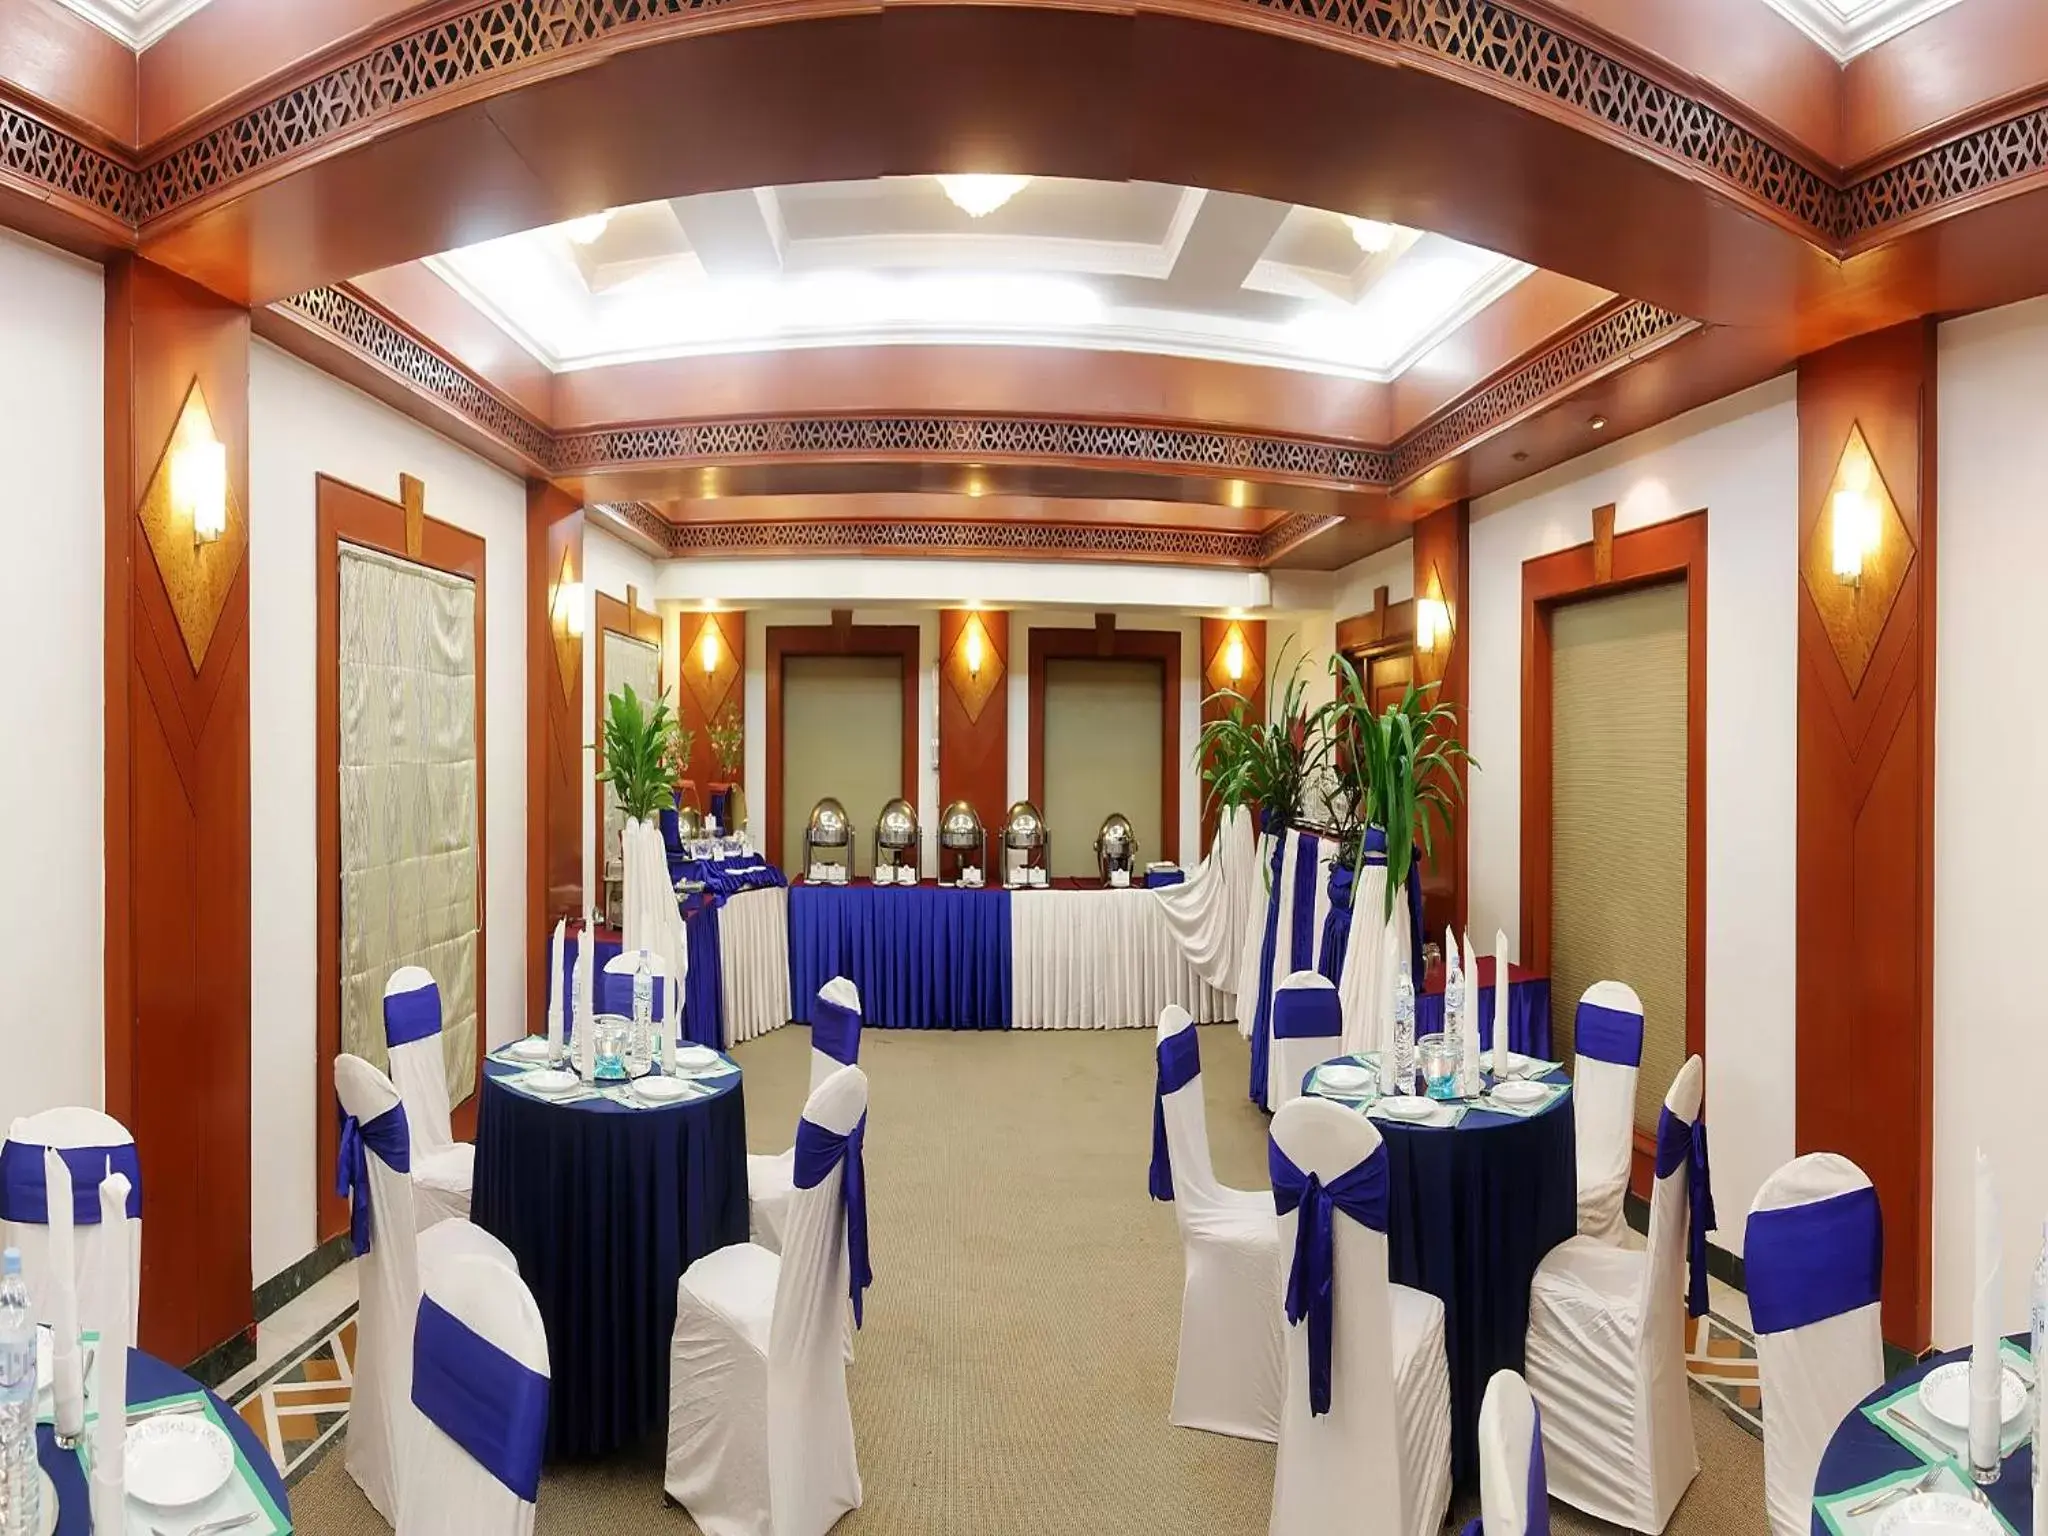 Banquet/Function facilities, Banquet Facilities in Sayaji Indore